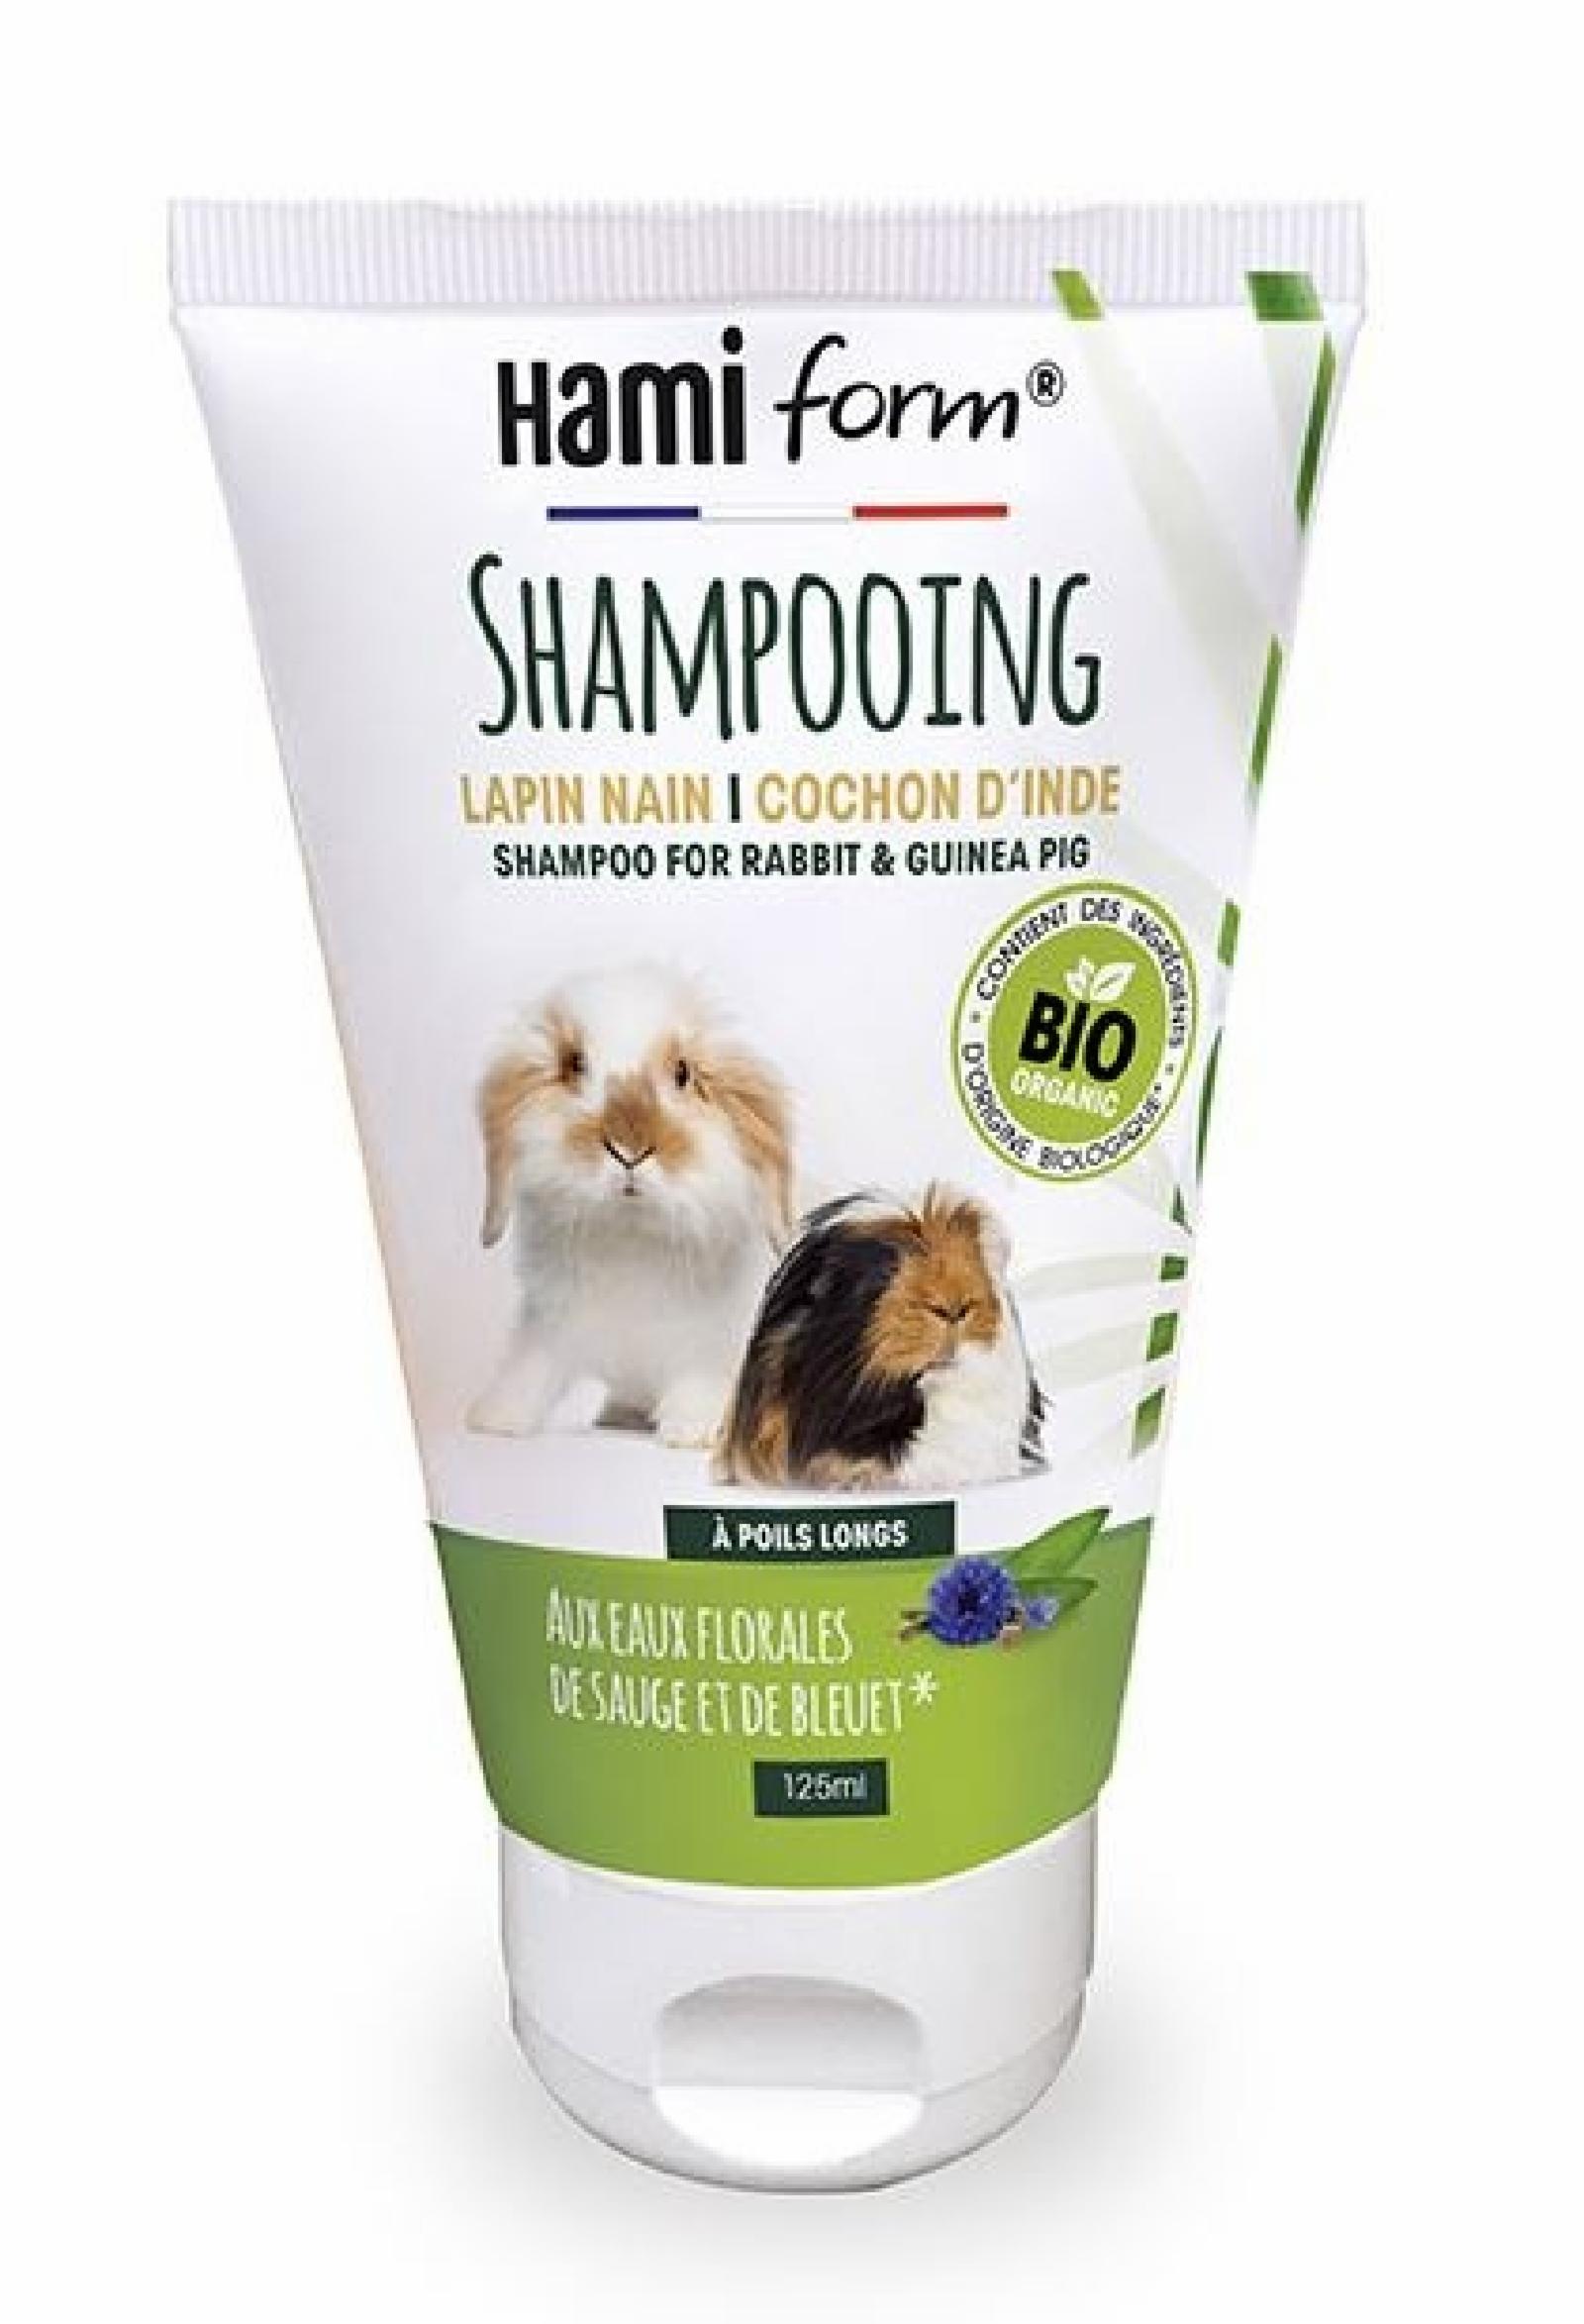 Hamiform | Органический несмываемый шампунь для длинношерстных кроликов и морских свинок. 125 г